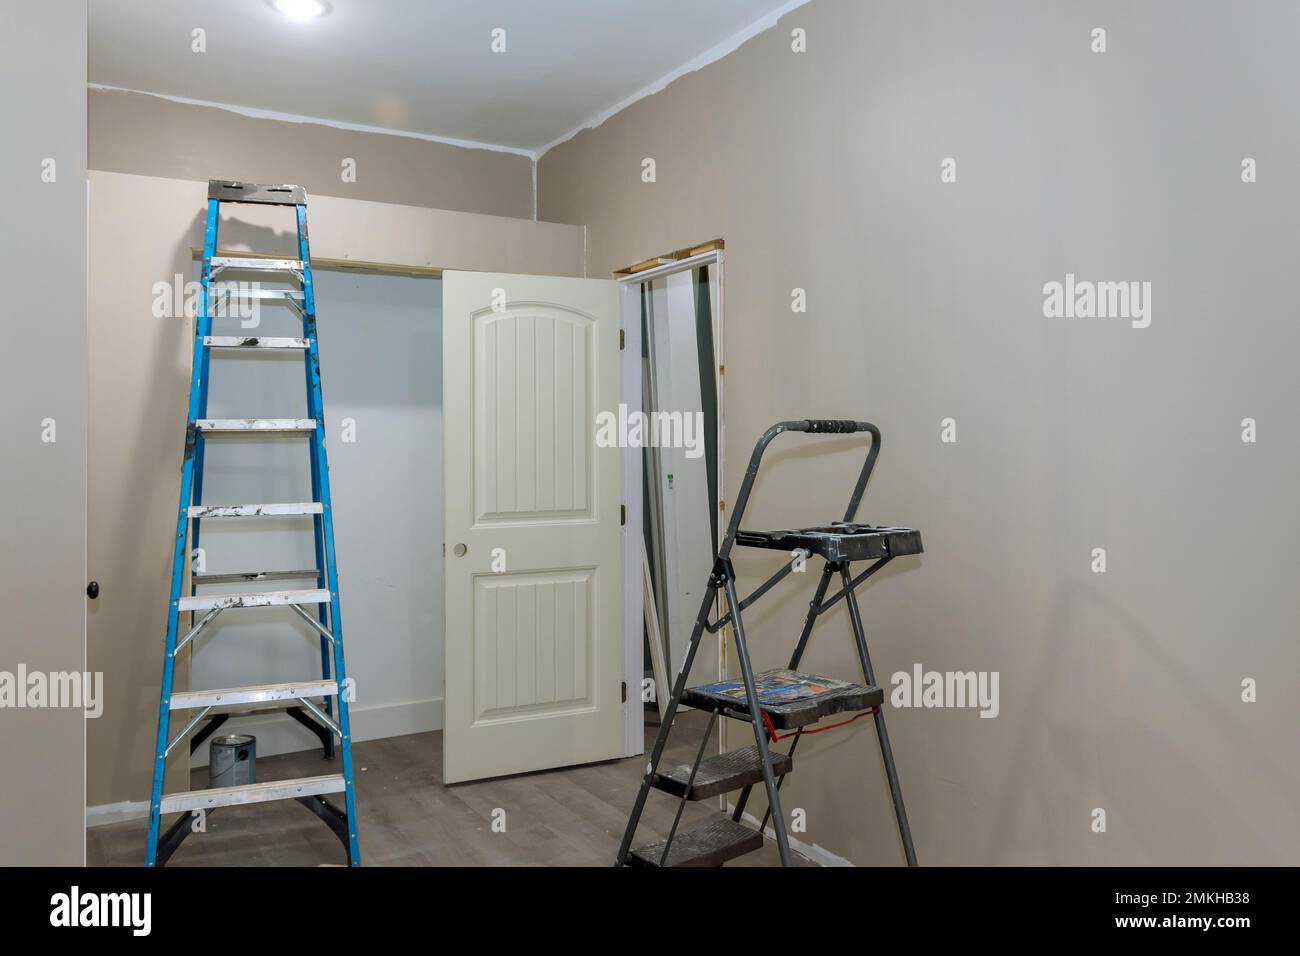 Der Raum ist mit einer bemalten Wand mit Malerausrüstung und einer Trittleiter ausgestattet Stockfoto